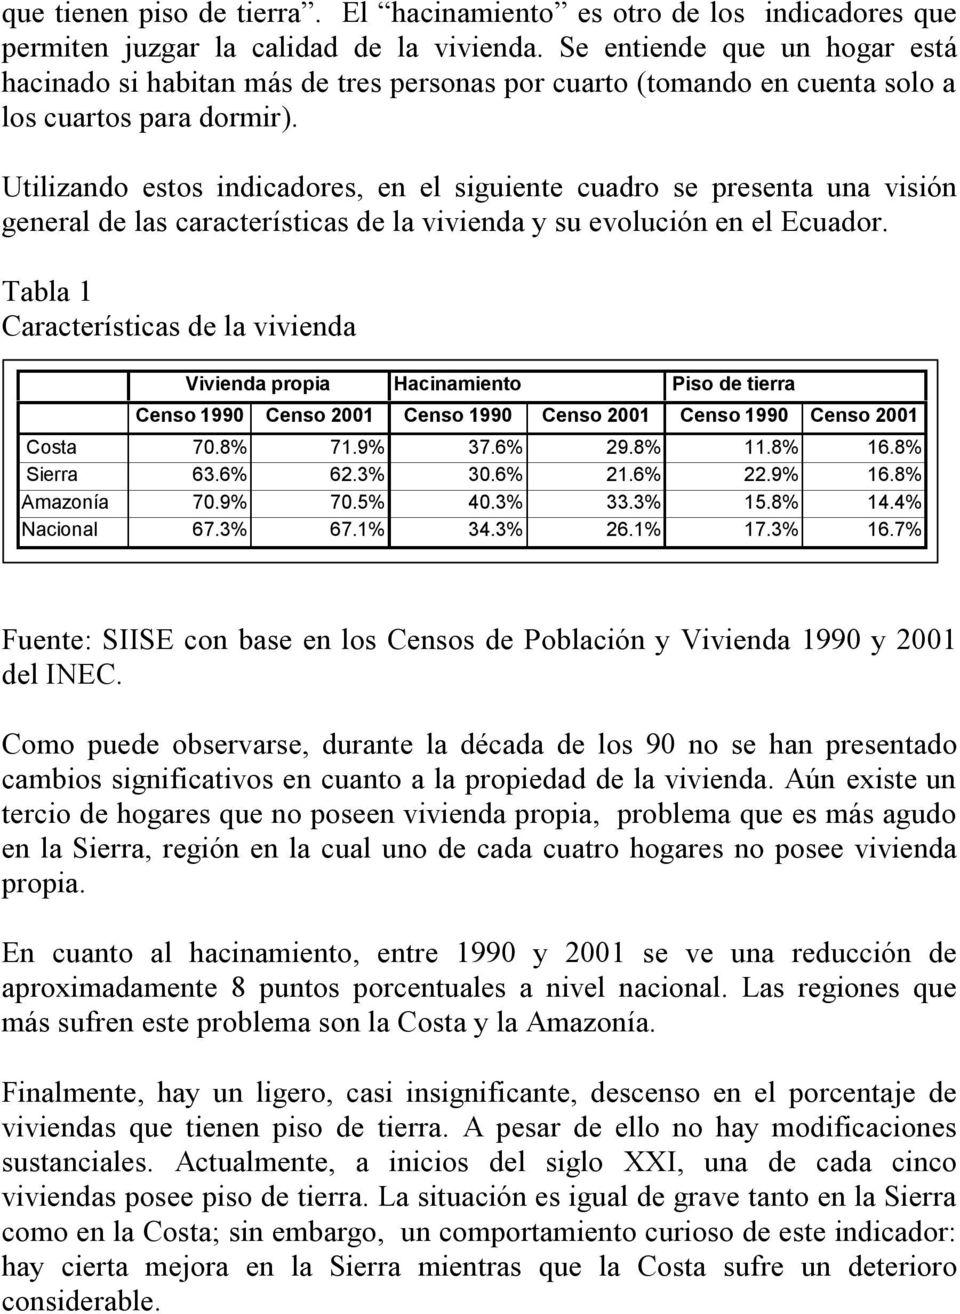 Utilizando estos indicadores, en el siguiente cuadro se presenta una visión general de las características de la vivienda y su evolución en el Ecuador.